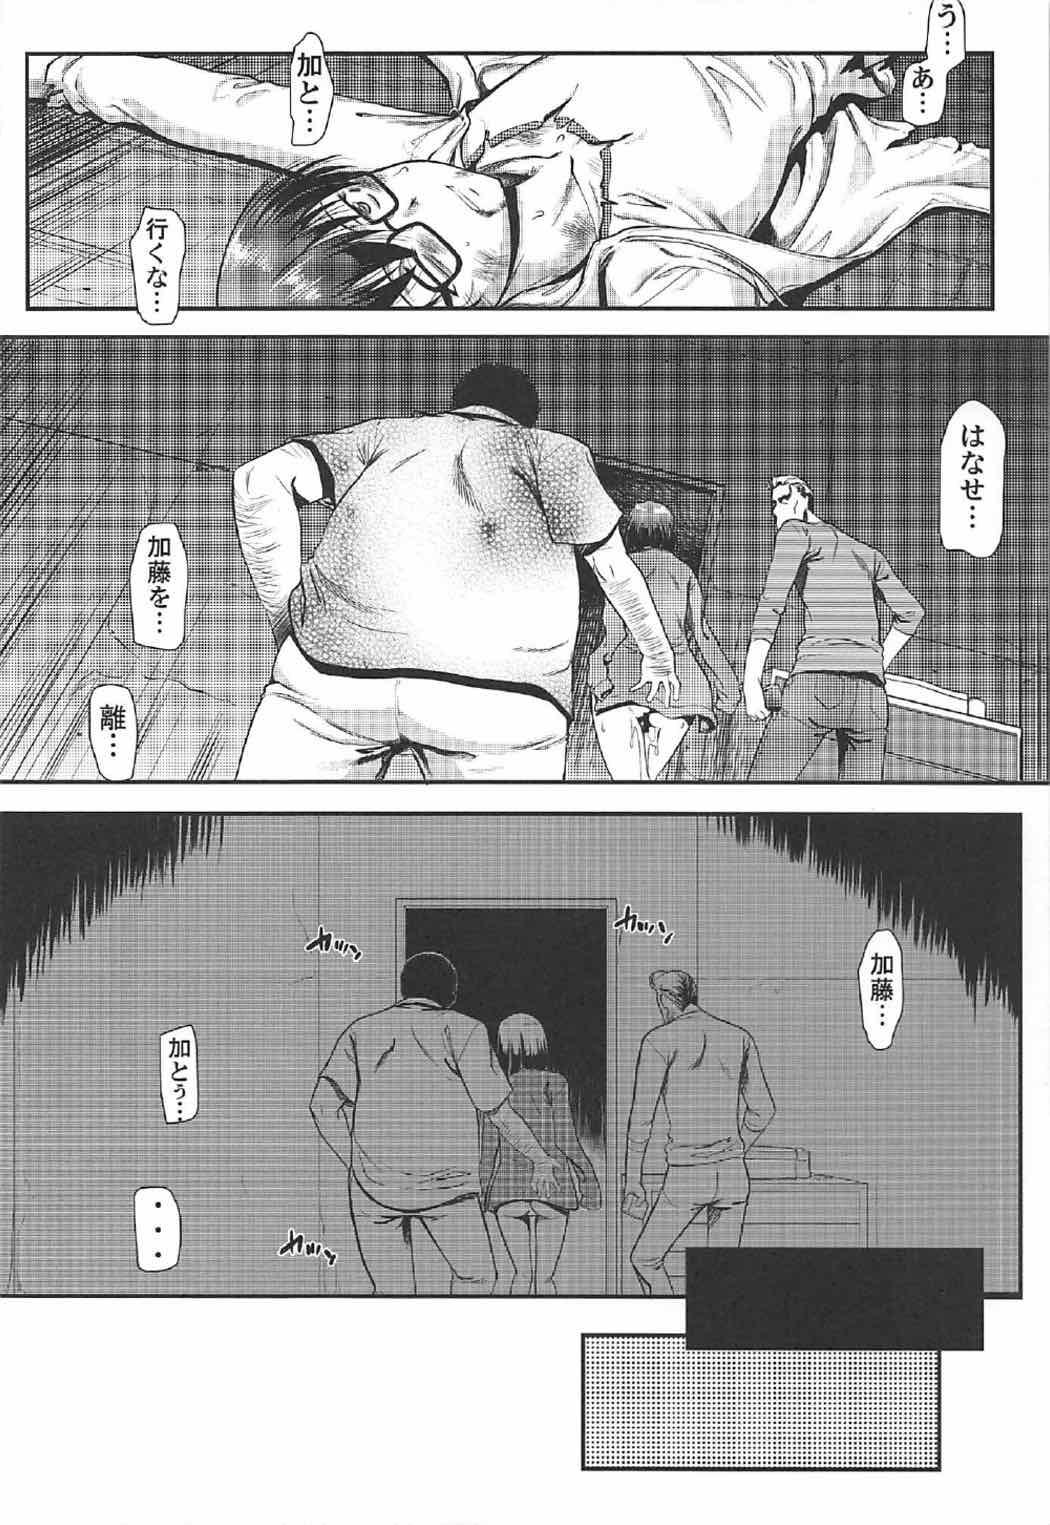 Penis Kimi wa Boku no Taiyou da 2 - Saenai heroine no sodatekata Ball Sucking - Page 11